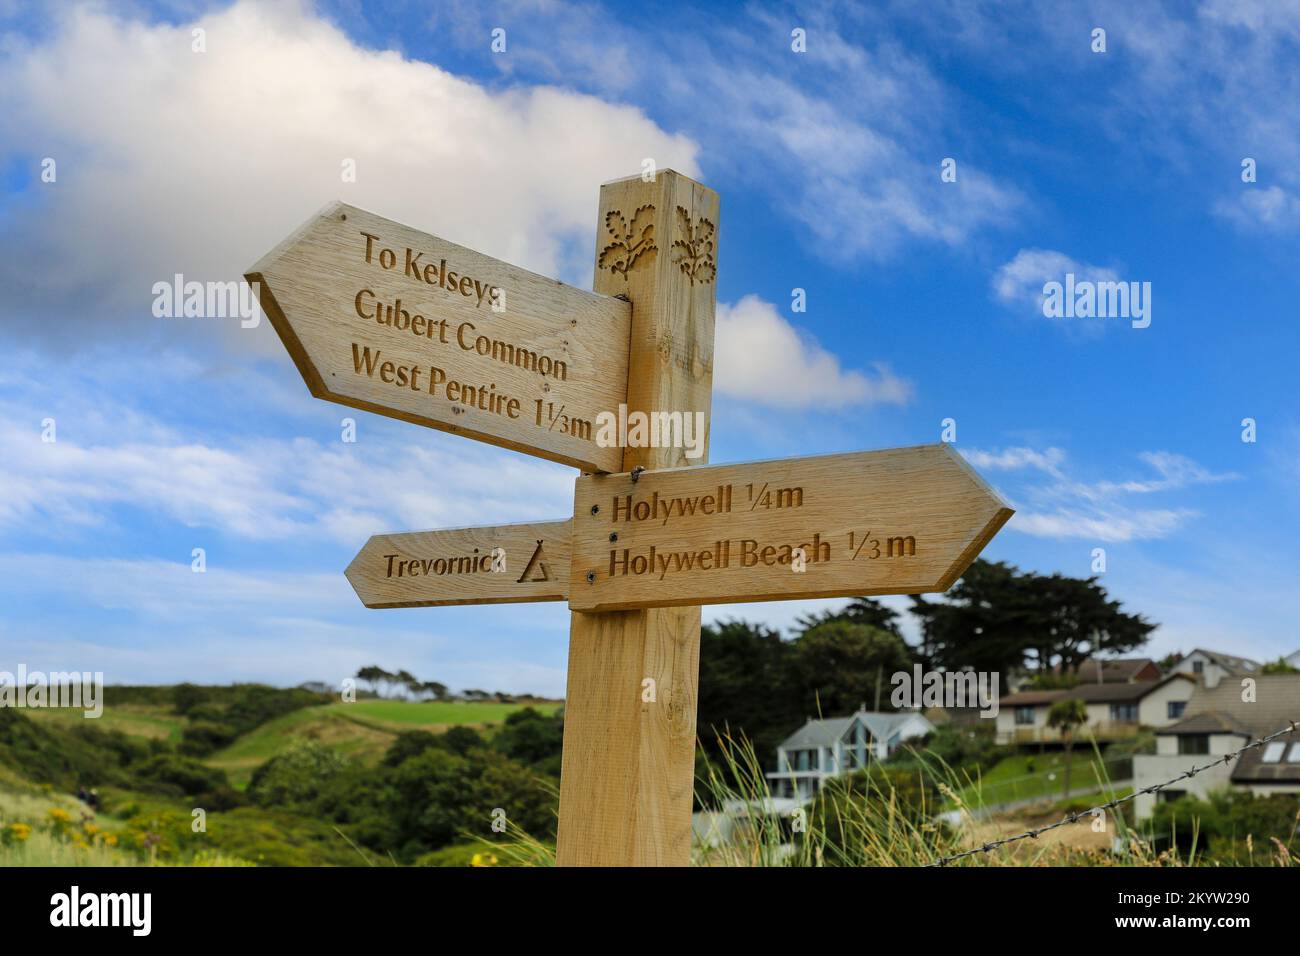 Un cartello in legno del National Trust che dice Holywell, Holywell Beach, The Kelsays, Cubert Common e West Pentire a Holywell Bay, Cornovaglia, Inghilterra, Regno Unito Foto Stock